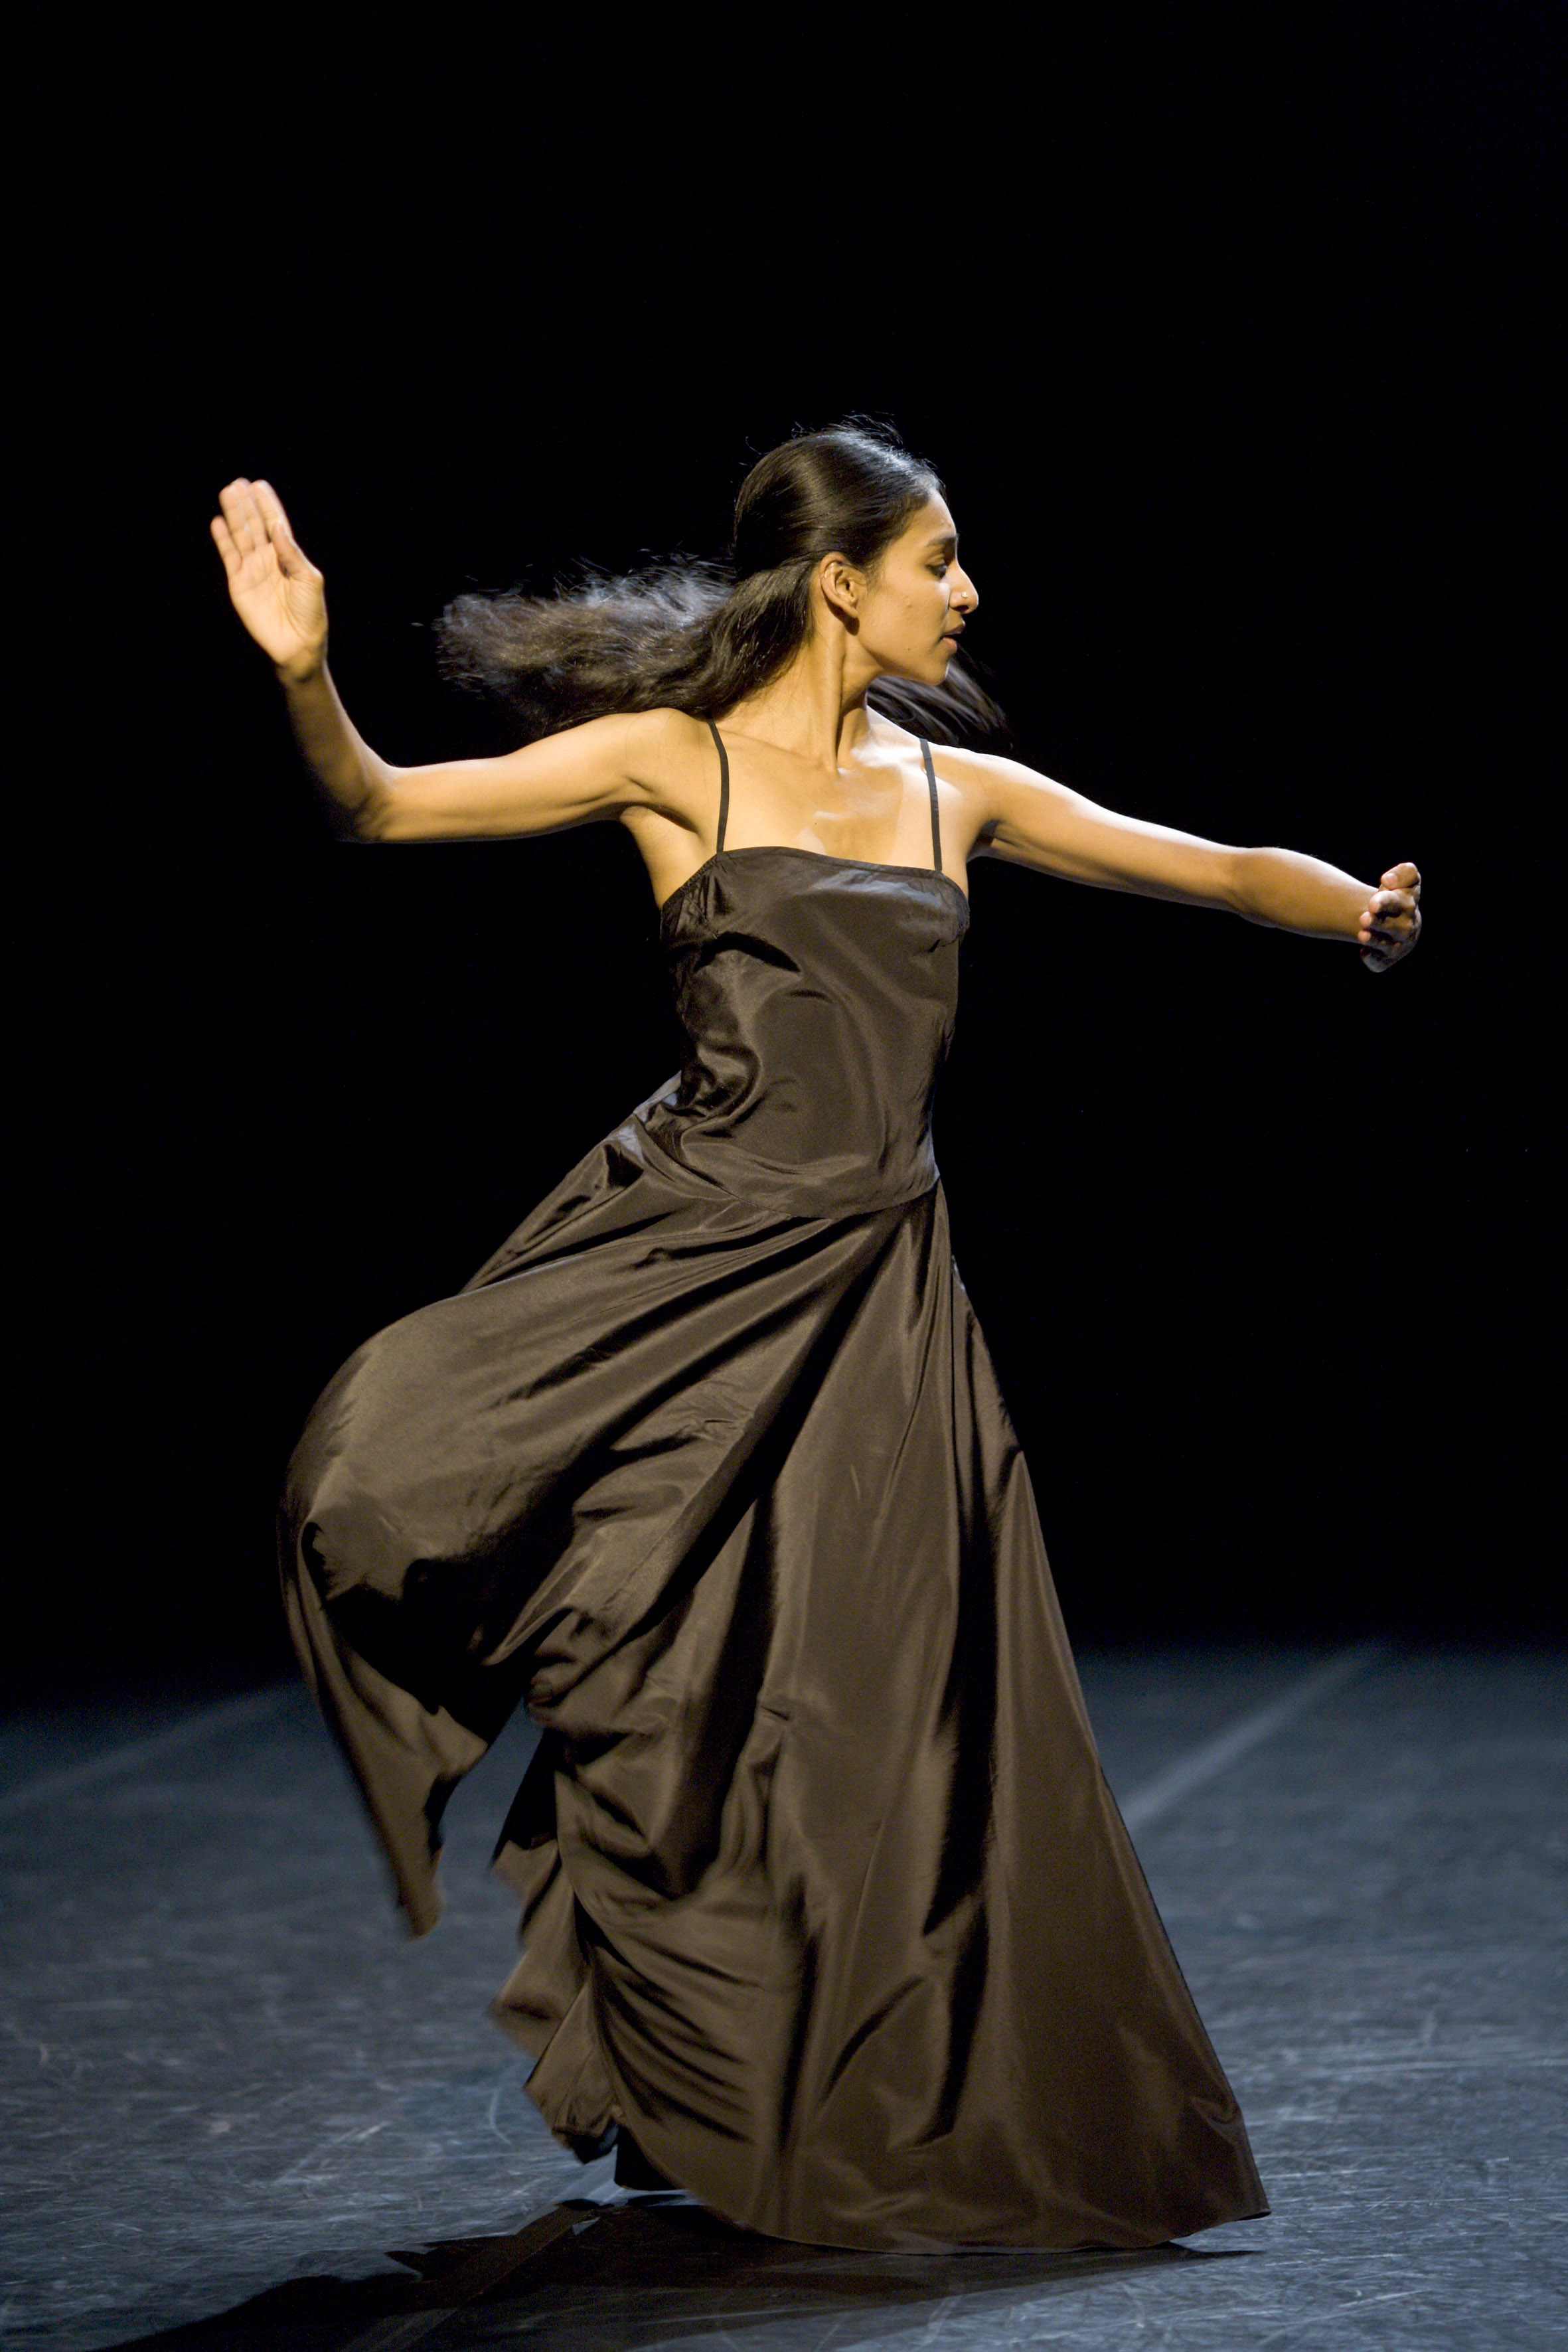 Dancing An Homage: Shantala Shivalingappa Honors Her Mentors with ...